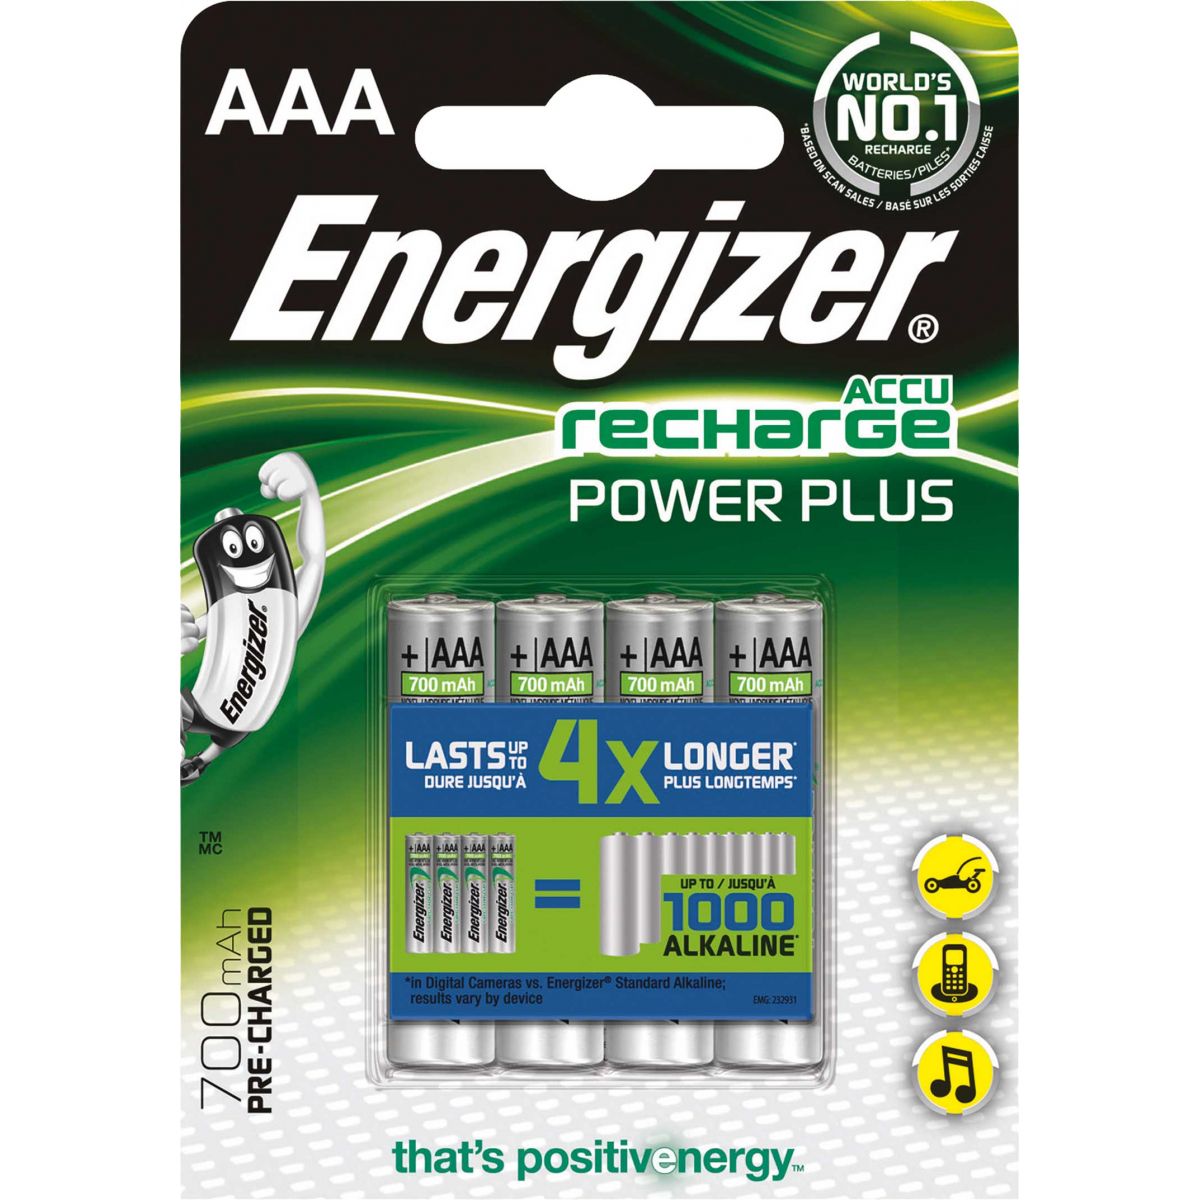 Akumulator Energizer HR03 700 mAh AAA (EN-417005)